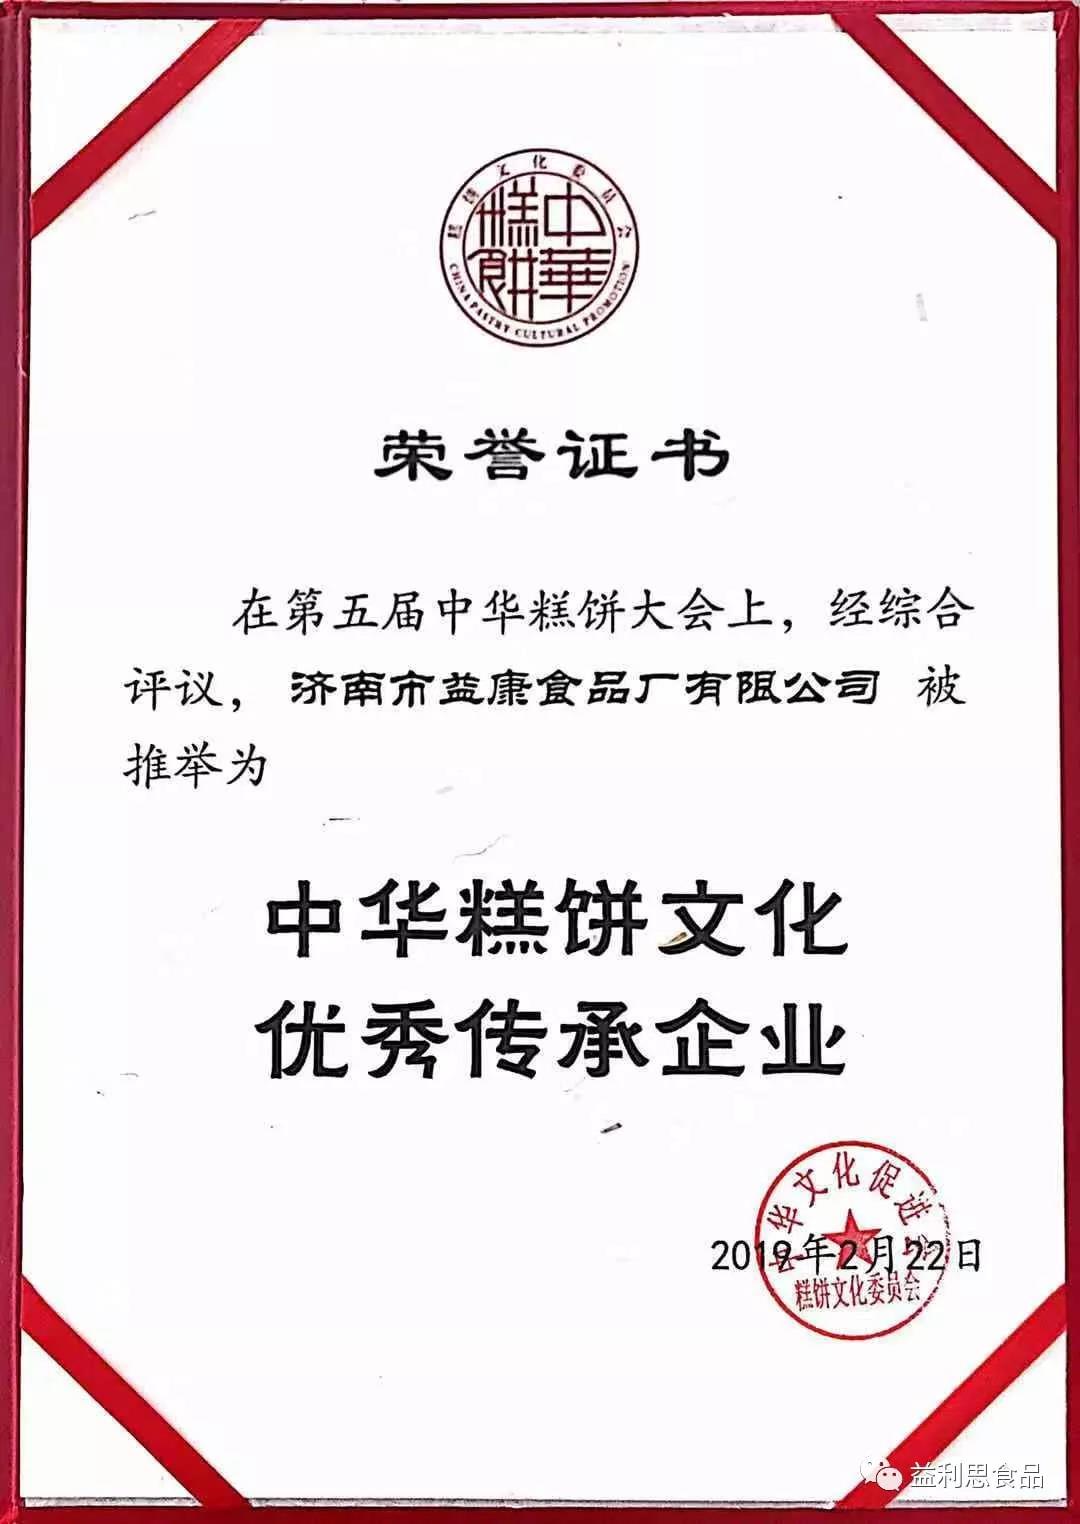 中华糕饼文化优传承企业荣誉证书